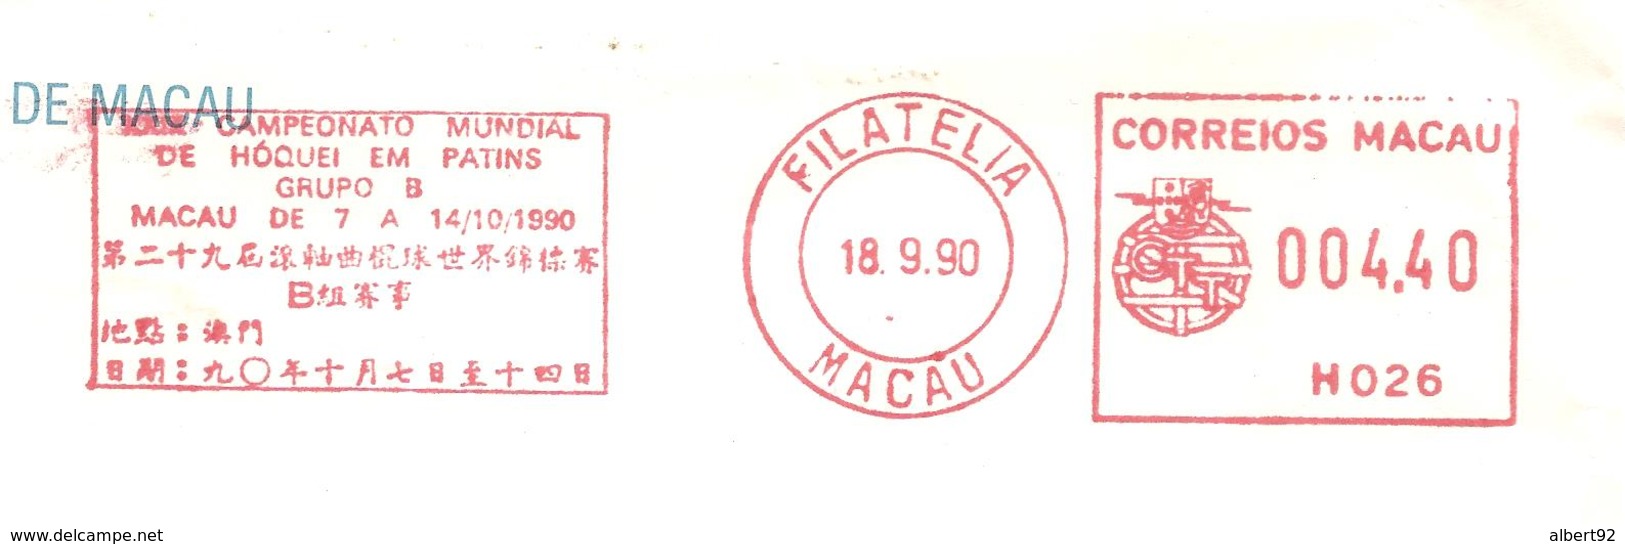 1990  EMA "Macao" Championnat Du Monde De Hockey Sur Patins - Jockey (sobre Hierba)